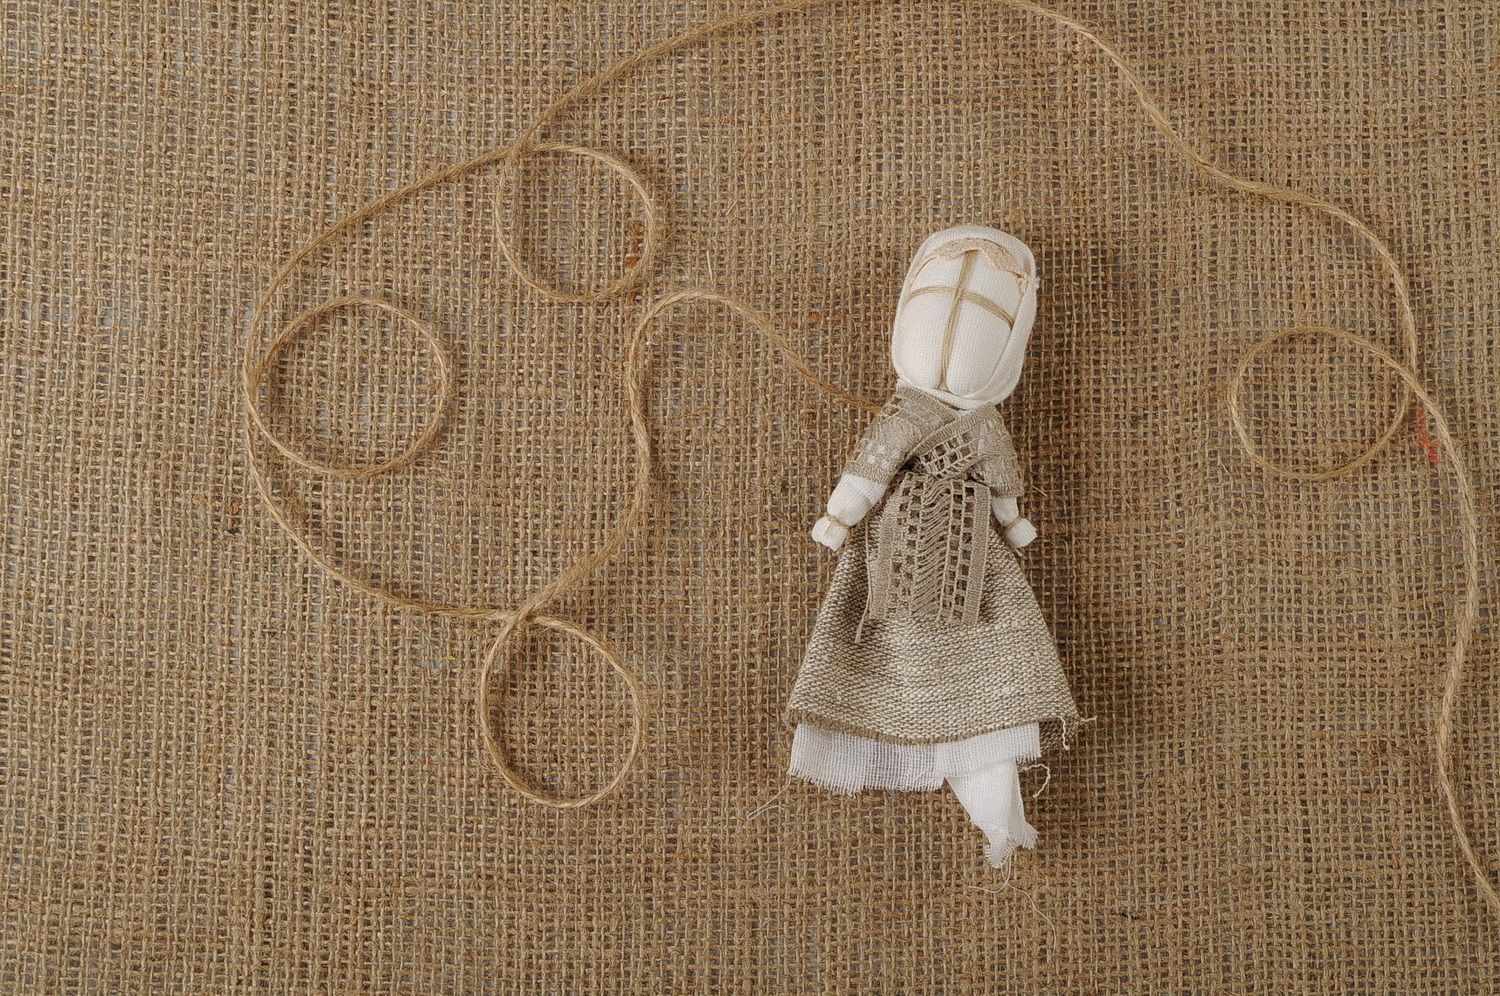 Bambola etnica di stoffa fatta a mano amuleto talismano giocattolo slavo  foto 1